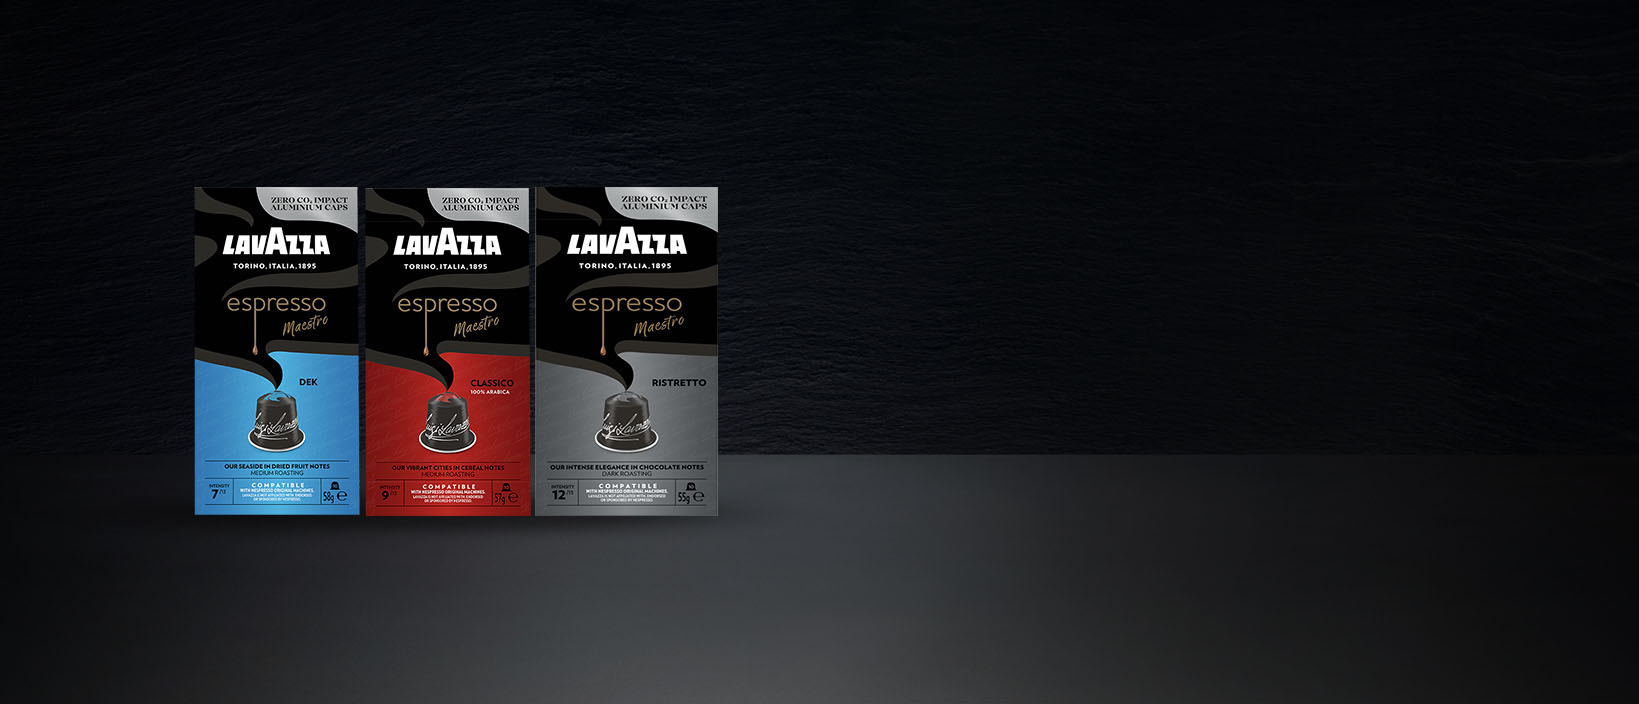 Cápsulas Lavazza Espresso Maestro compatibles con máquinas de café Nespresso